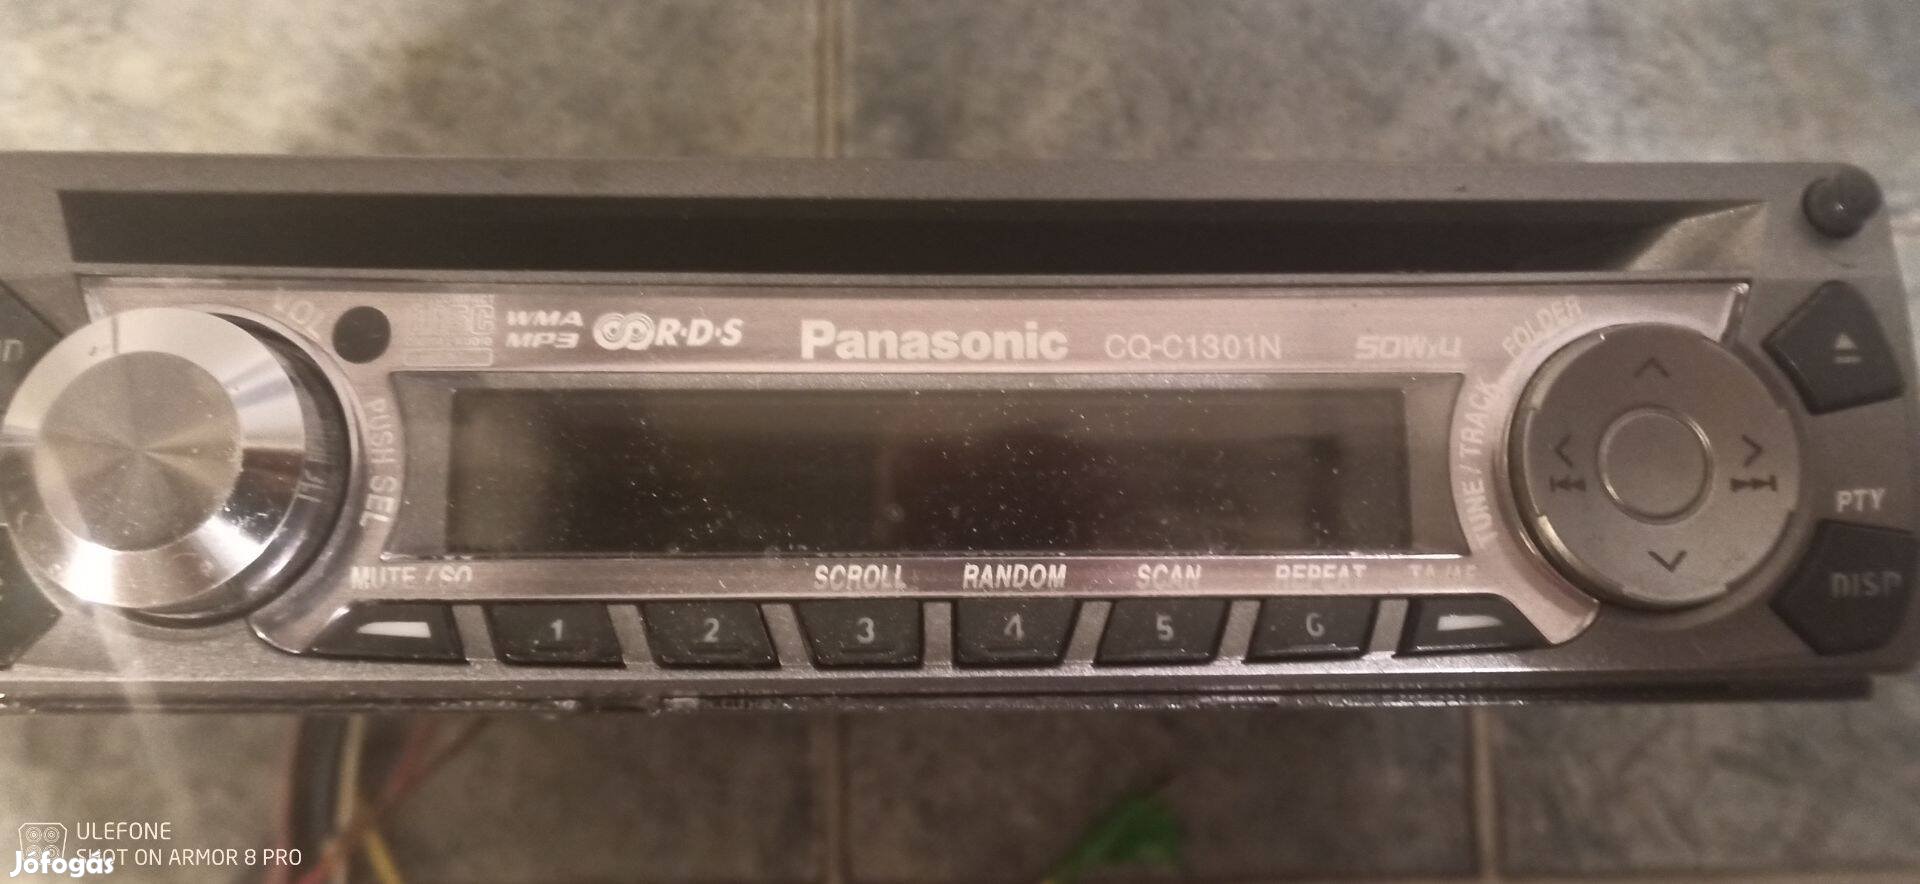 Panasonic cd-s autó rádió eladó